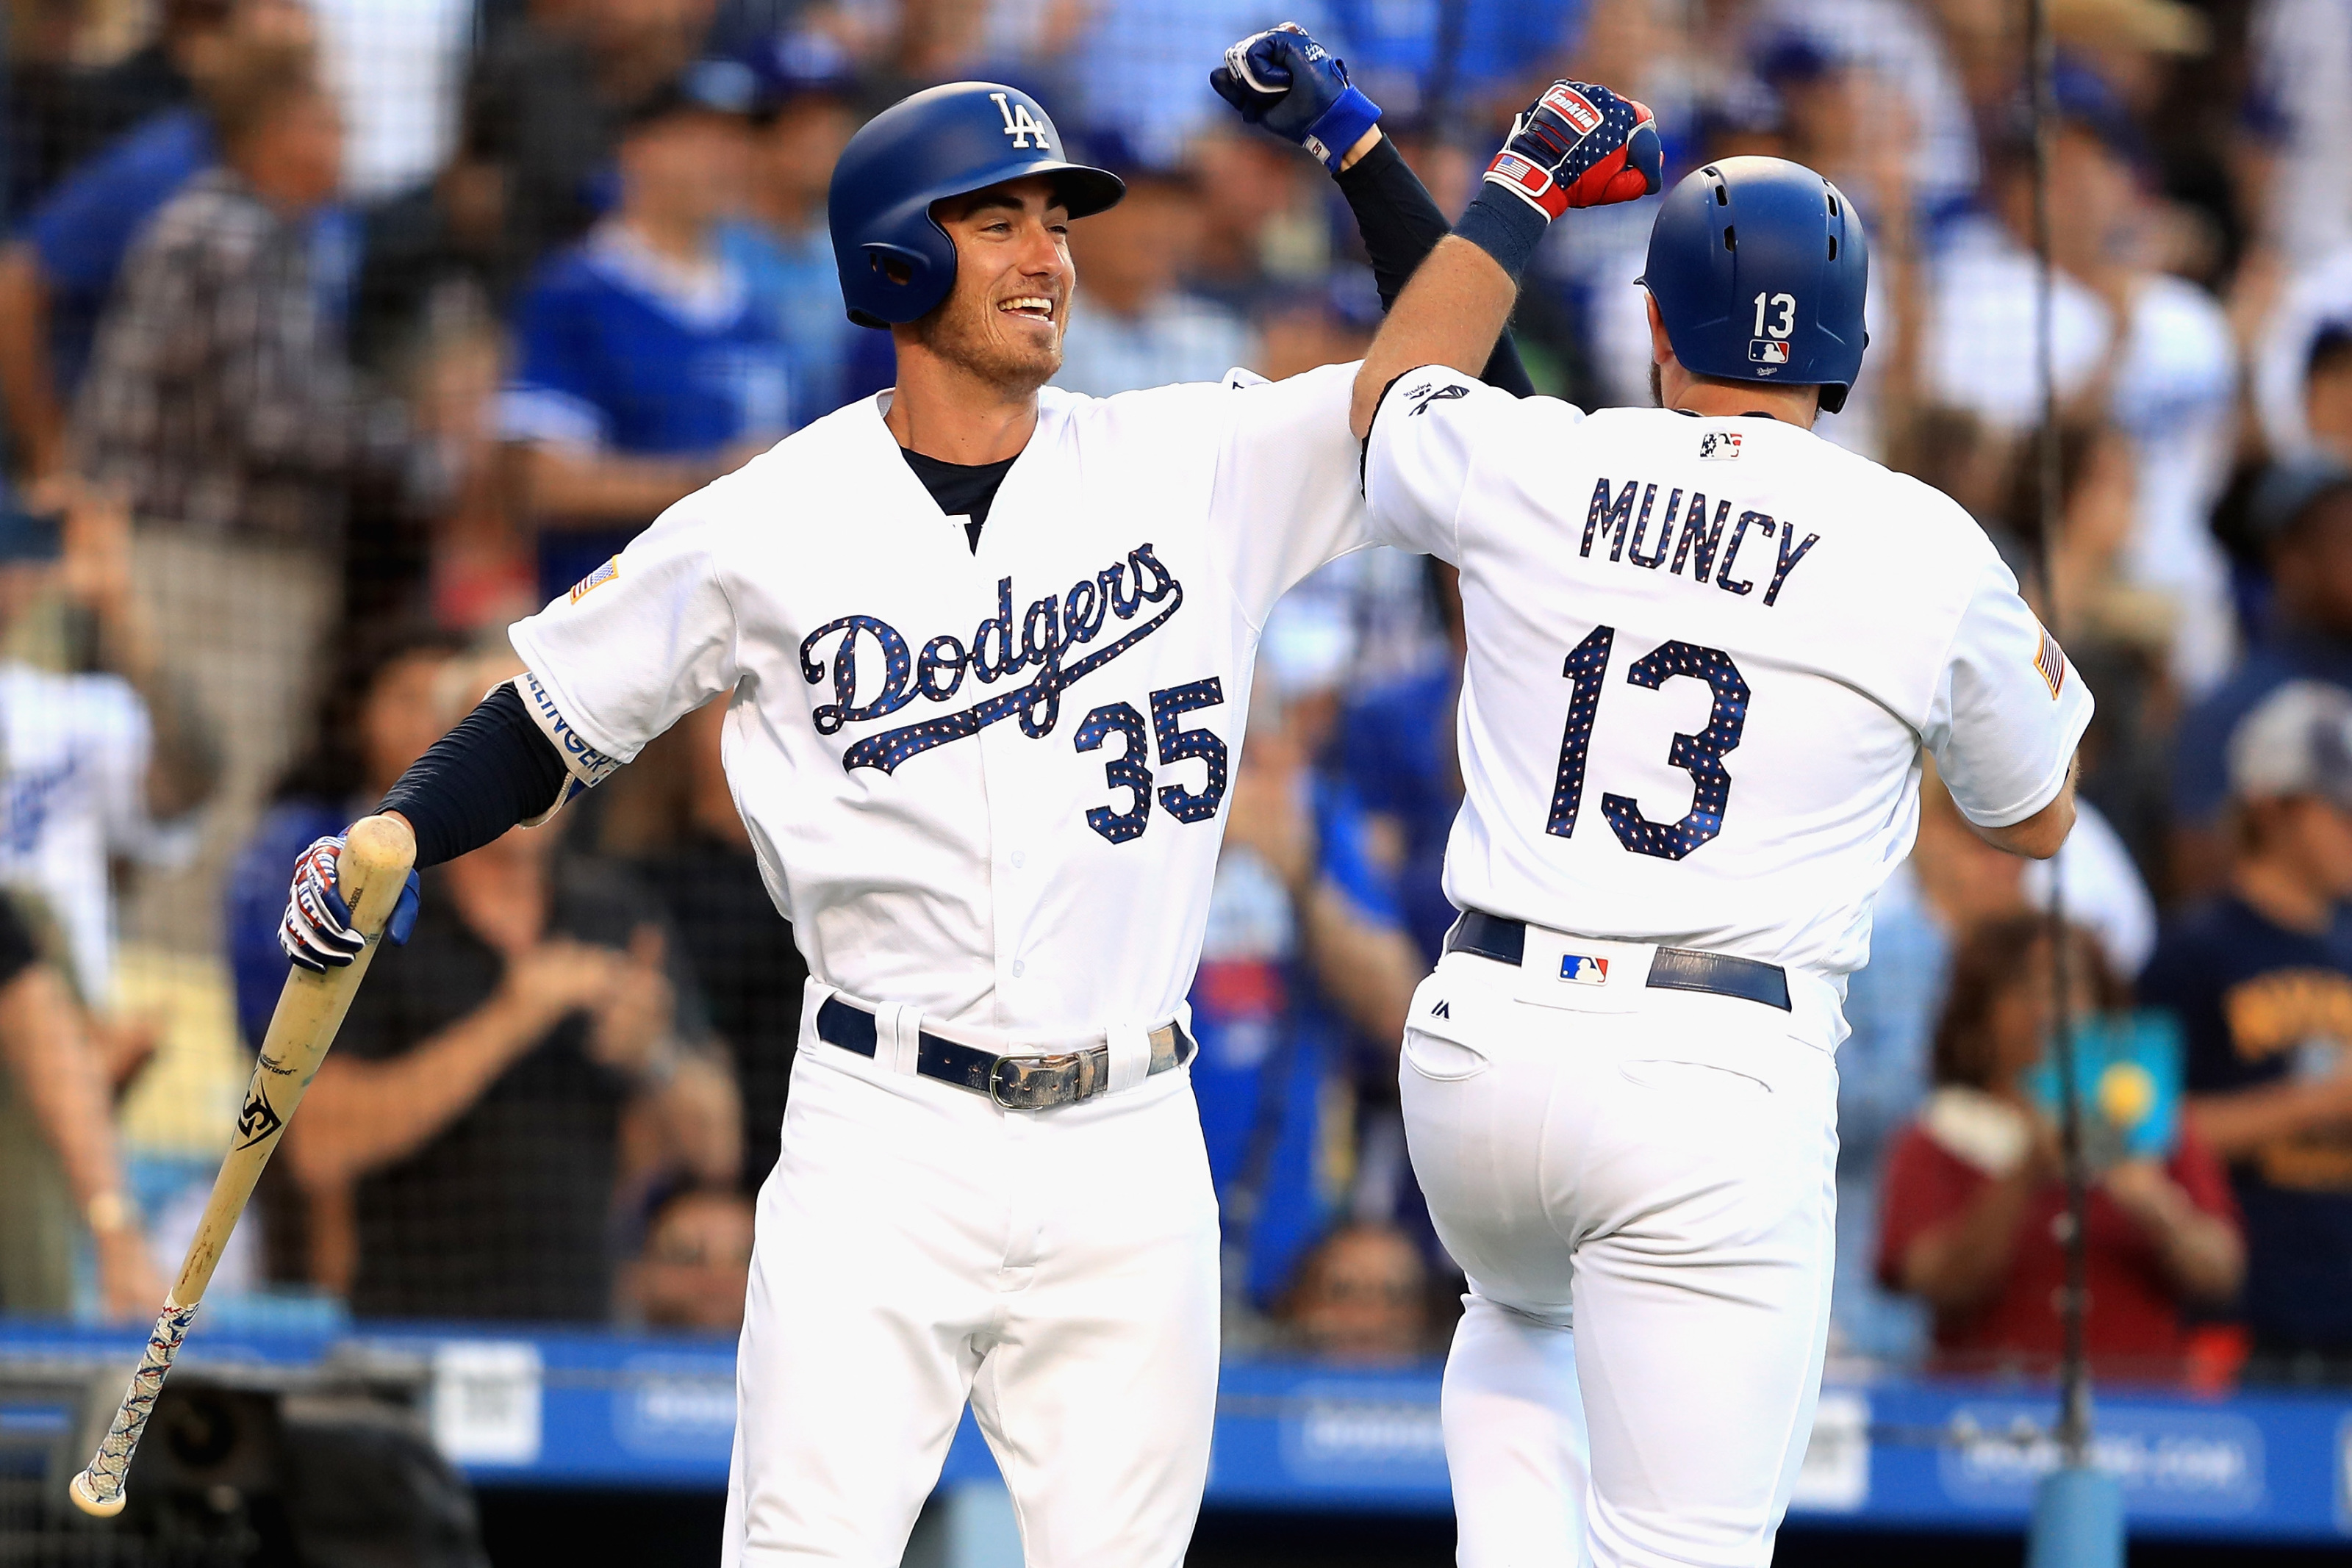 Los Angeles Dodgers: Max Muncy belongs at second base